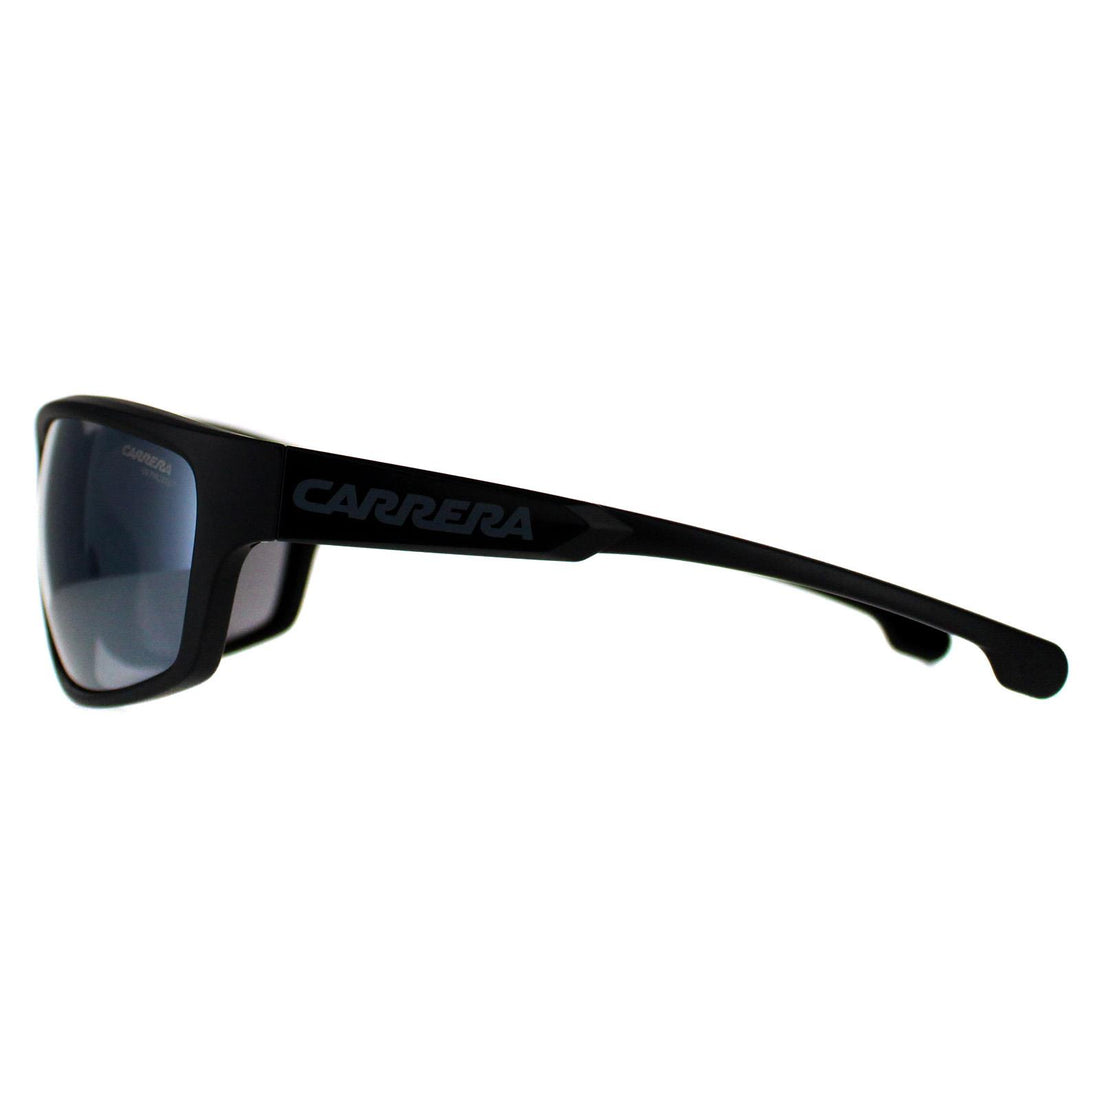 Carrera Sunglasses Ducati Carduc 002/S 08A T4 Black Grey Silver Mirror